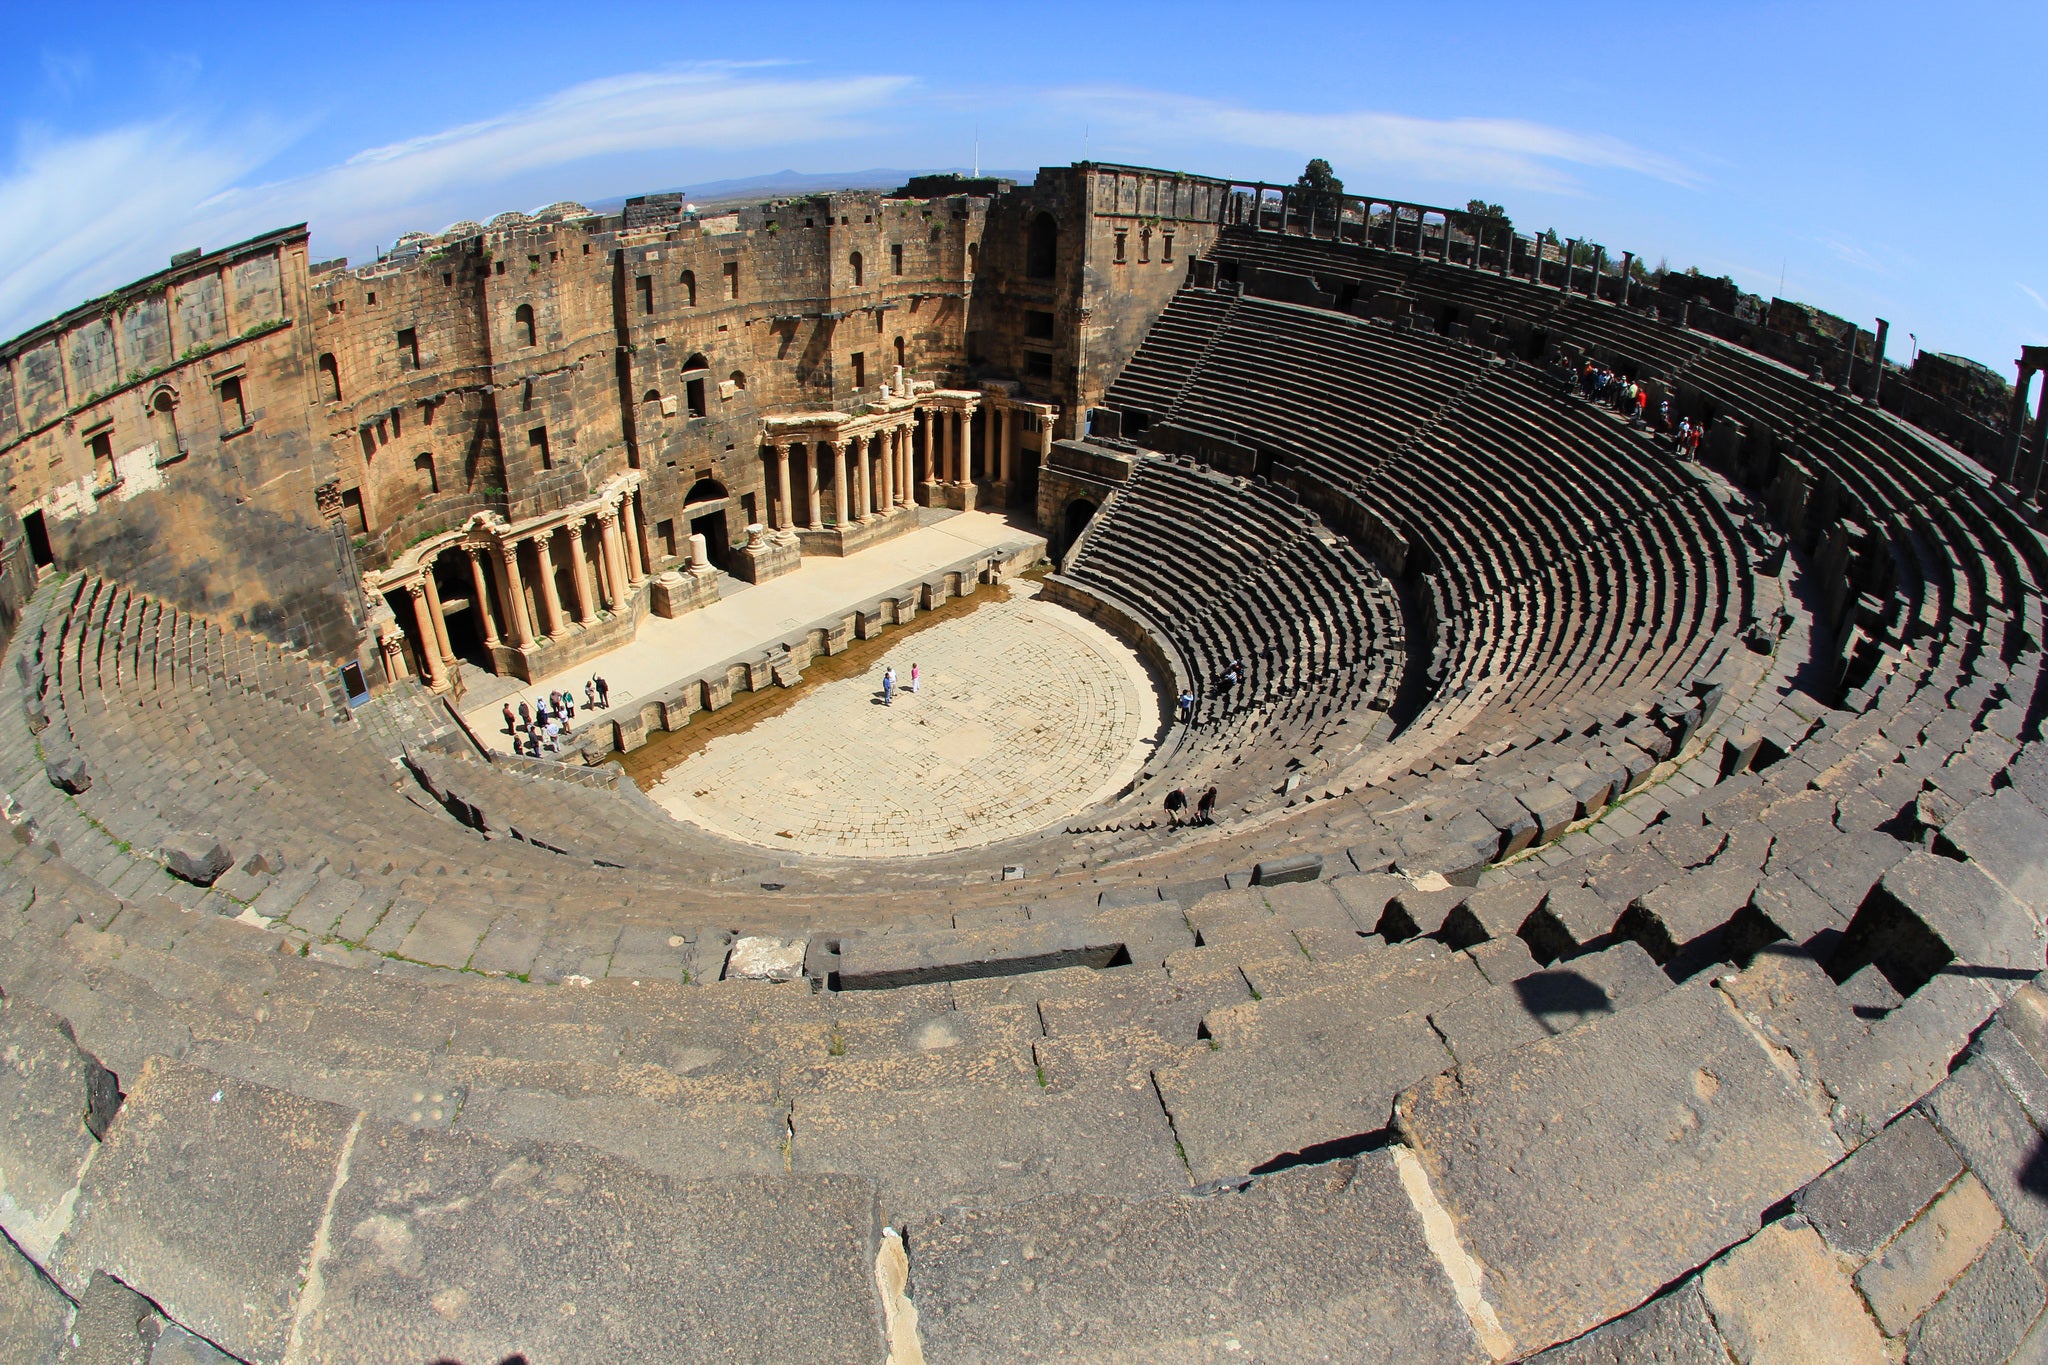 The amphitheatre in Bosra, Syria